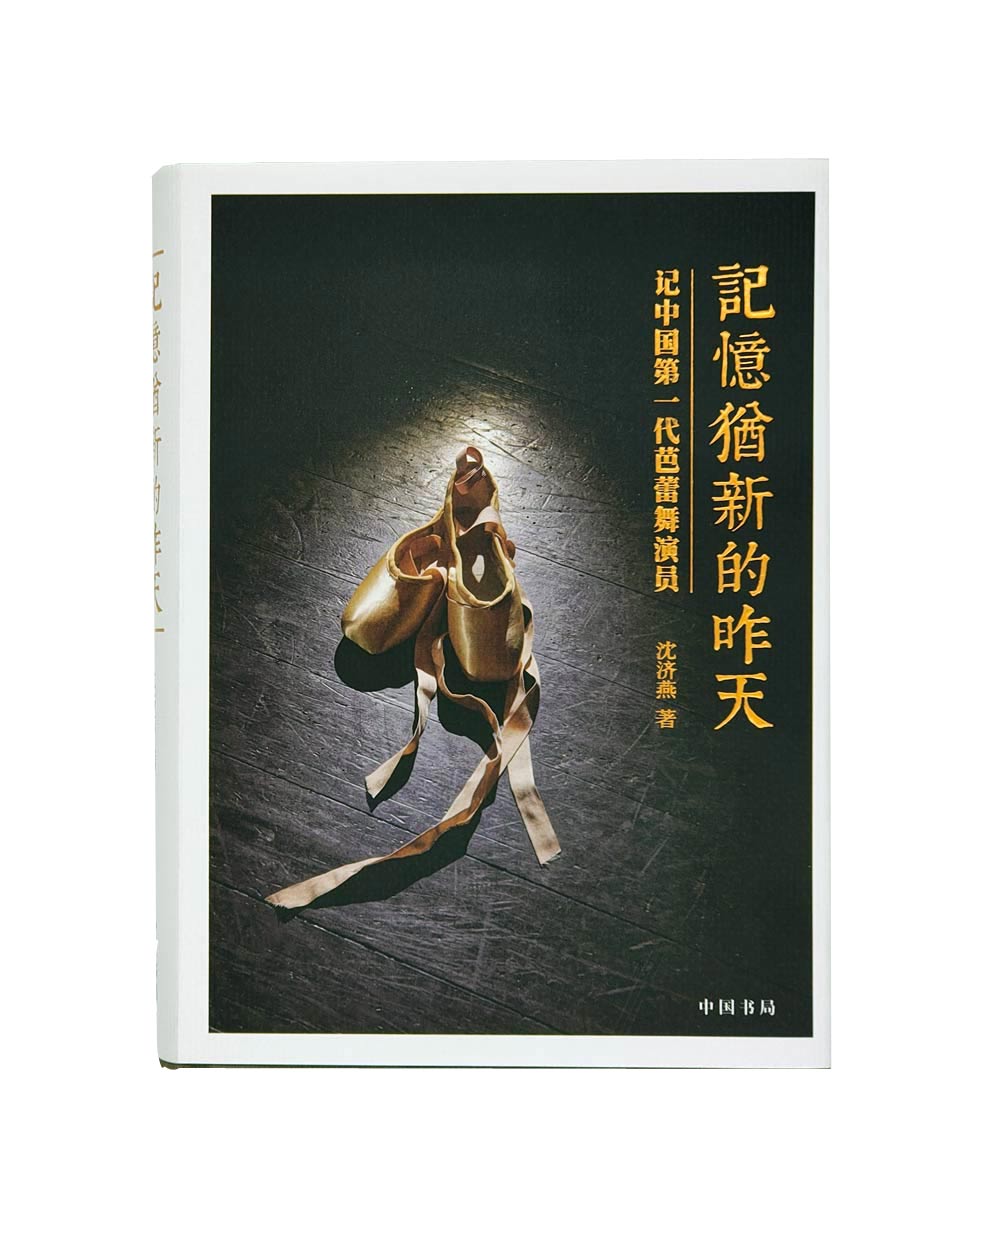 《记忆犹新的昨天》 记中国一代芭蕾舞演员/沈济燕著